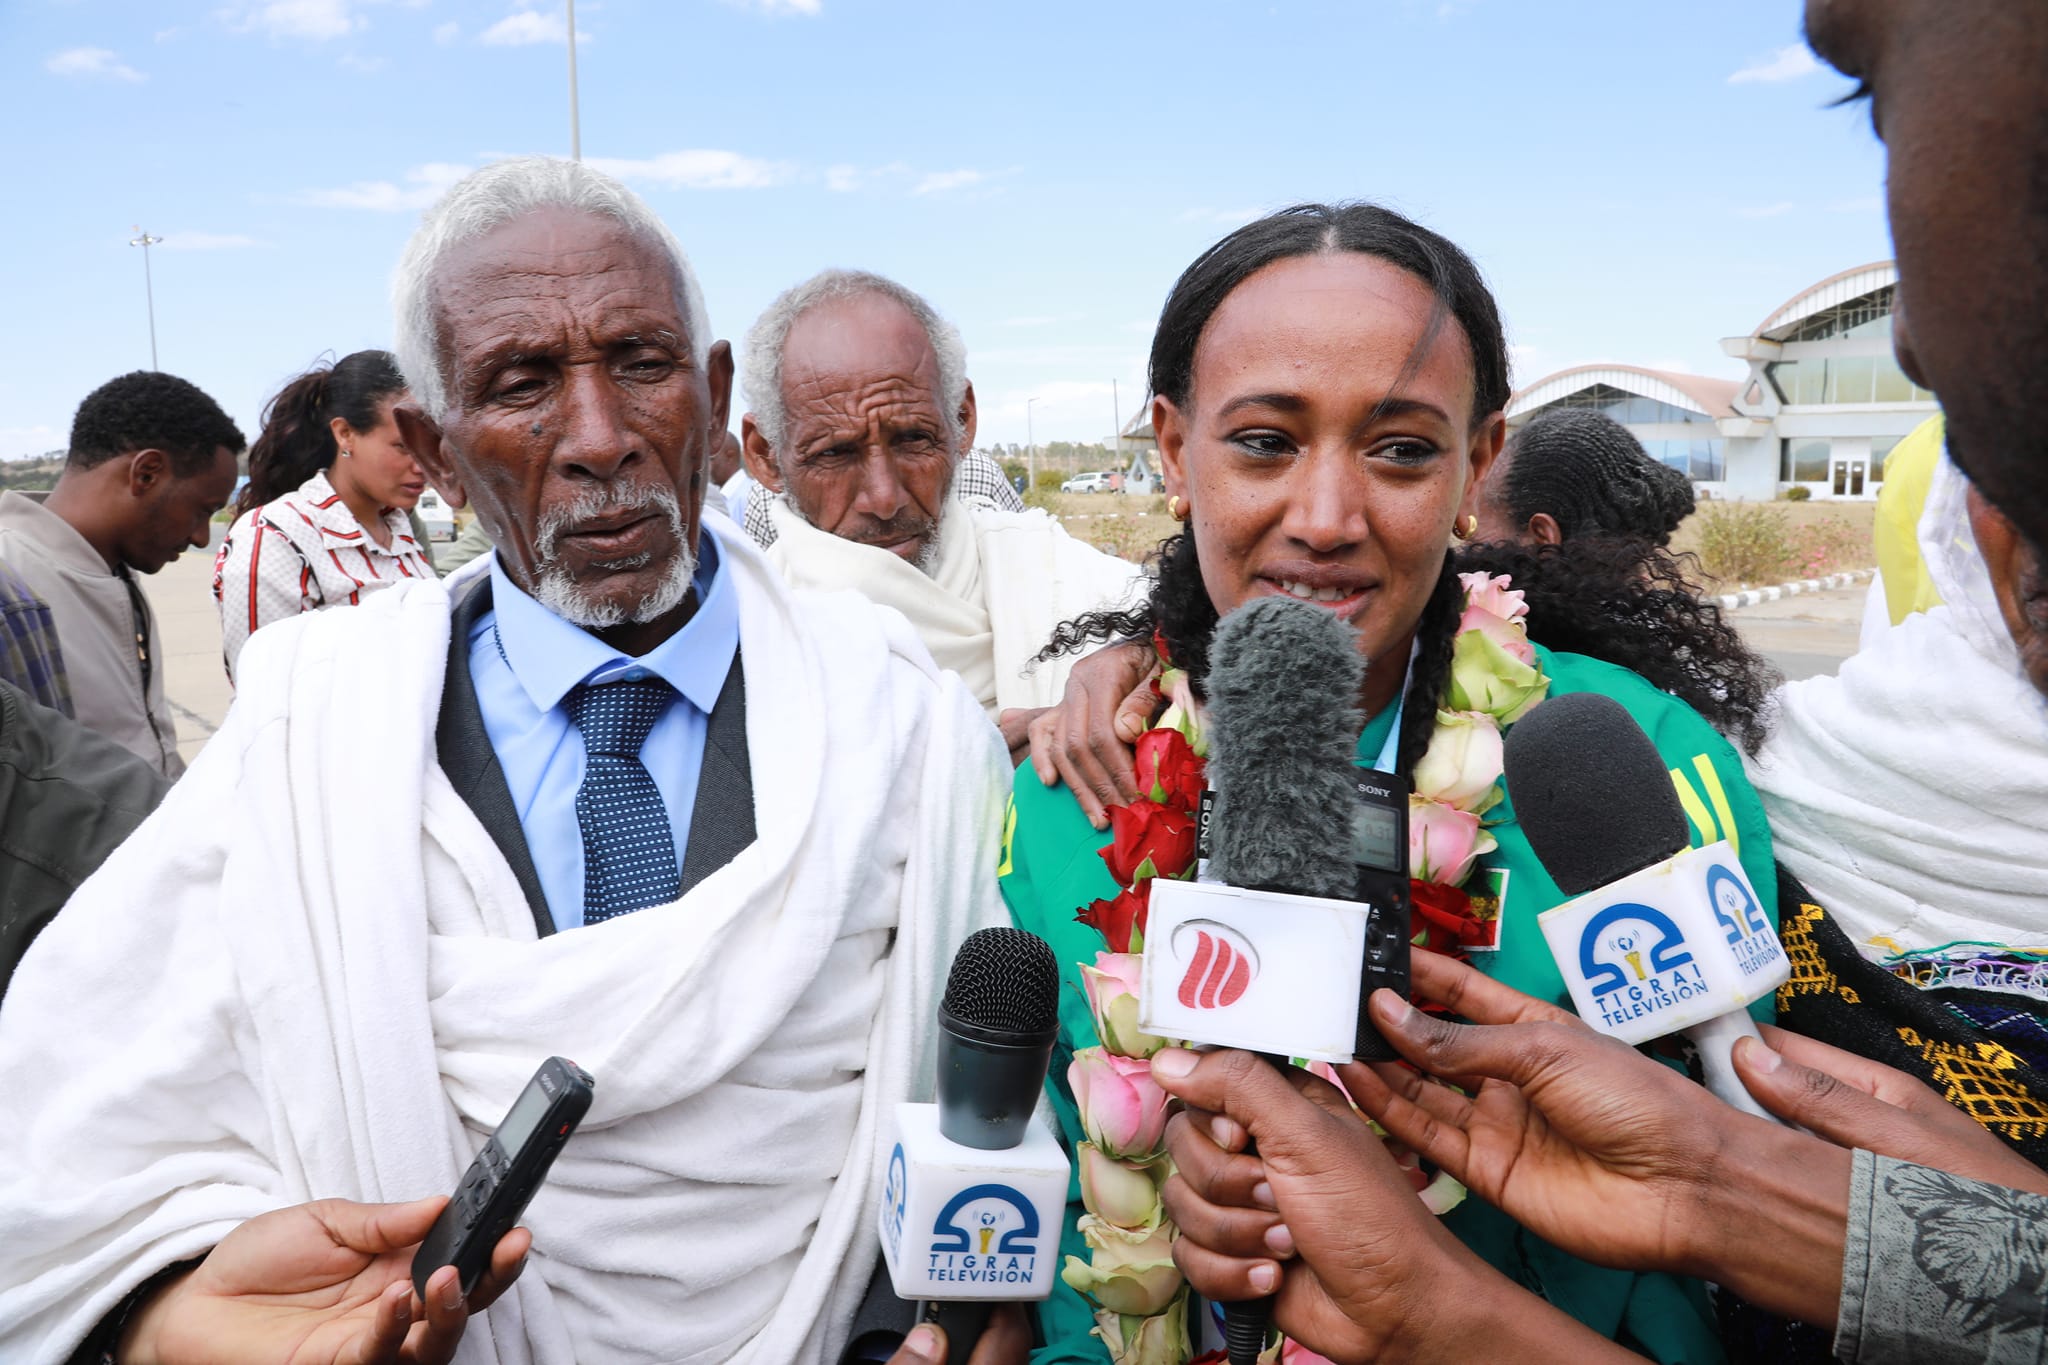 Ethiopian heroes and heroines